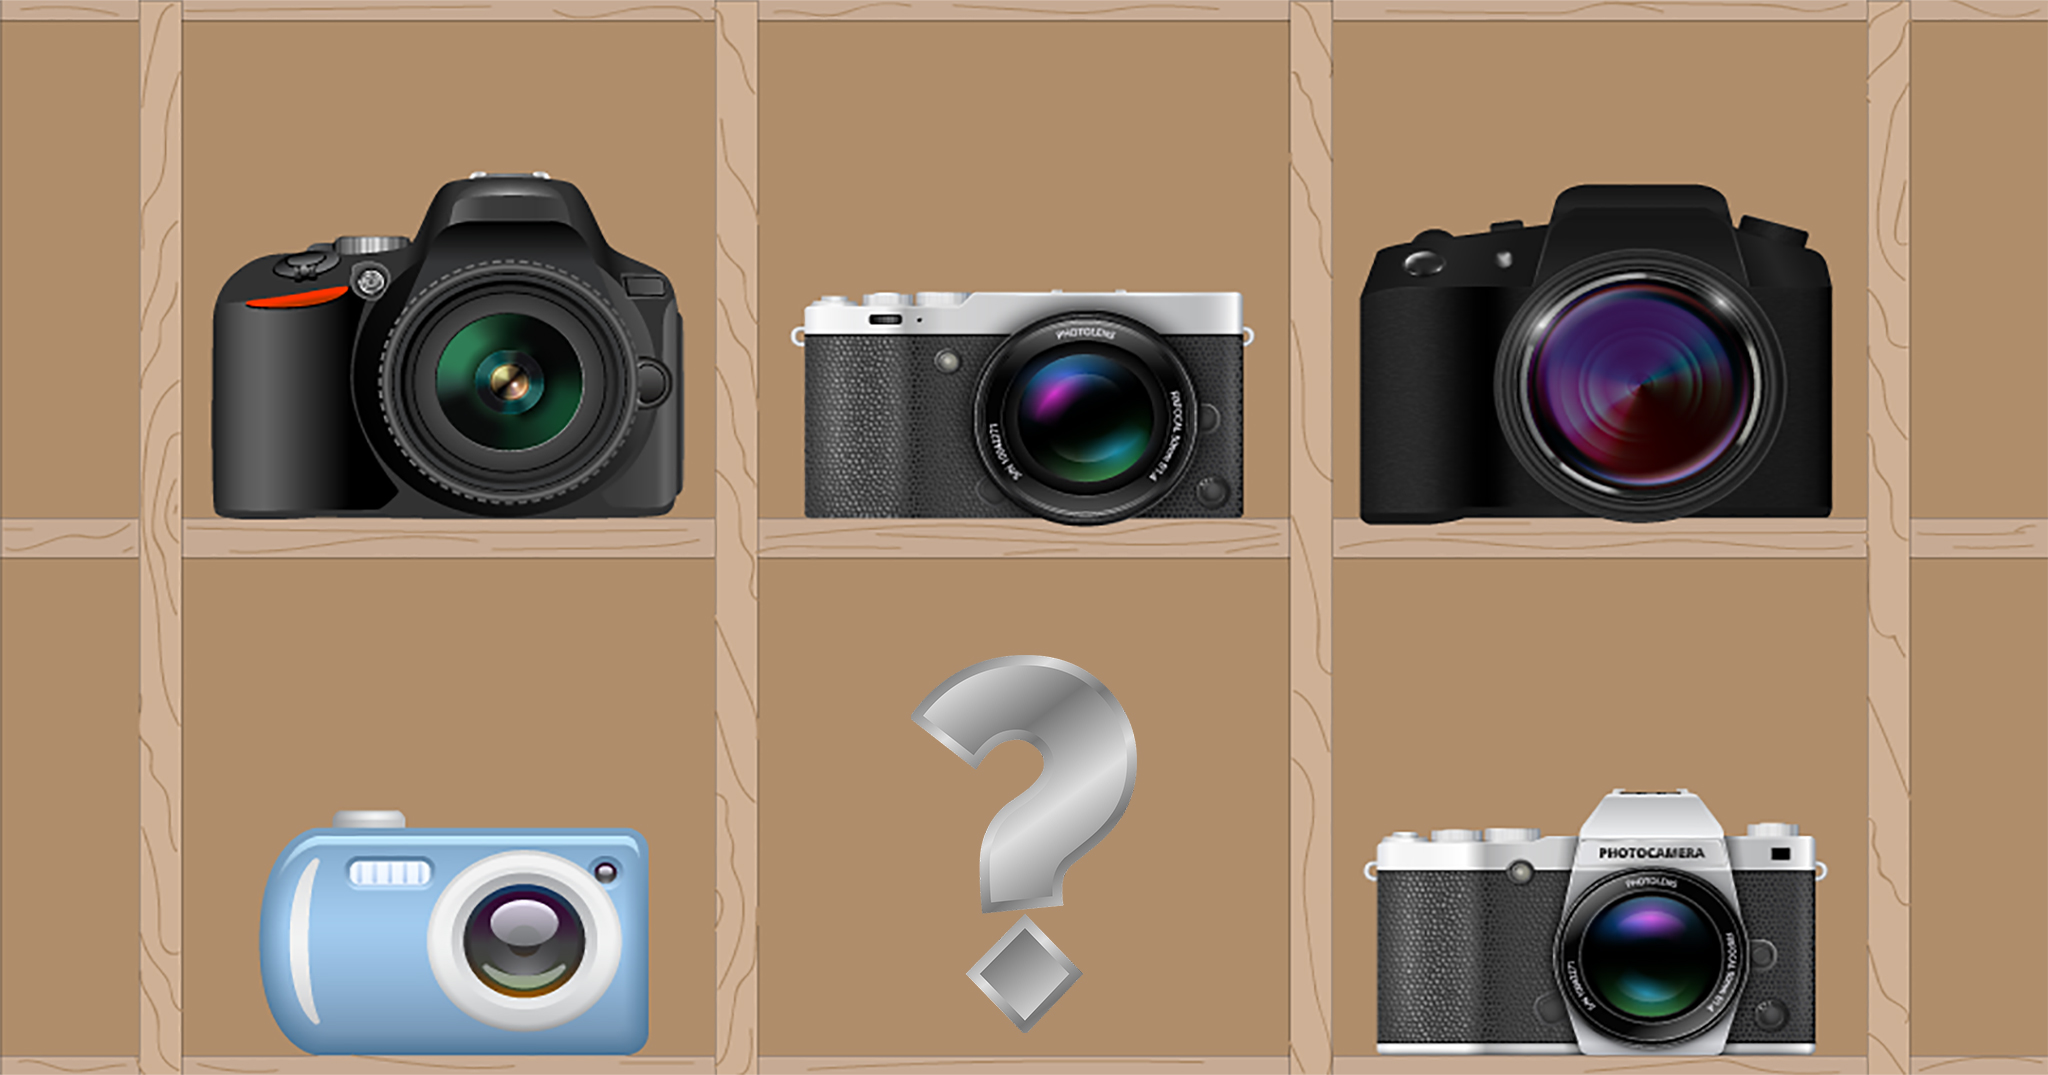 Tôi muốn mua máy ảnh mà không biết chọn cái nào? - Topic tư vấn & thảo luận (2018)